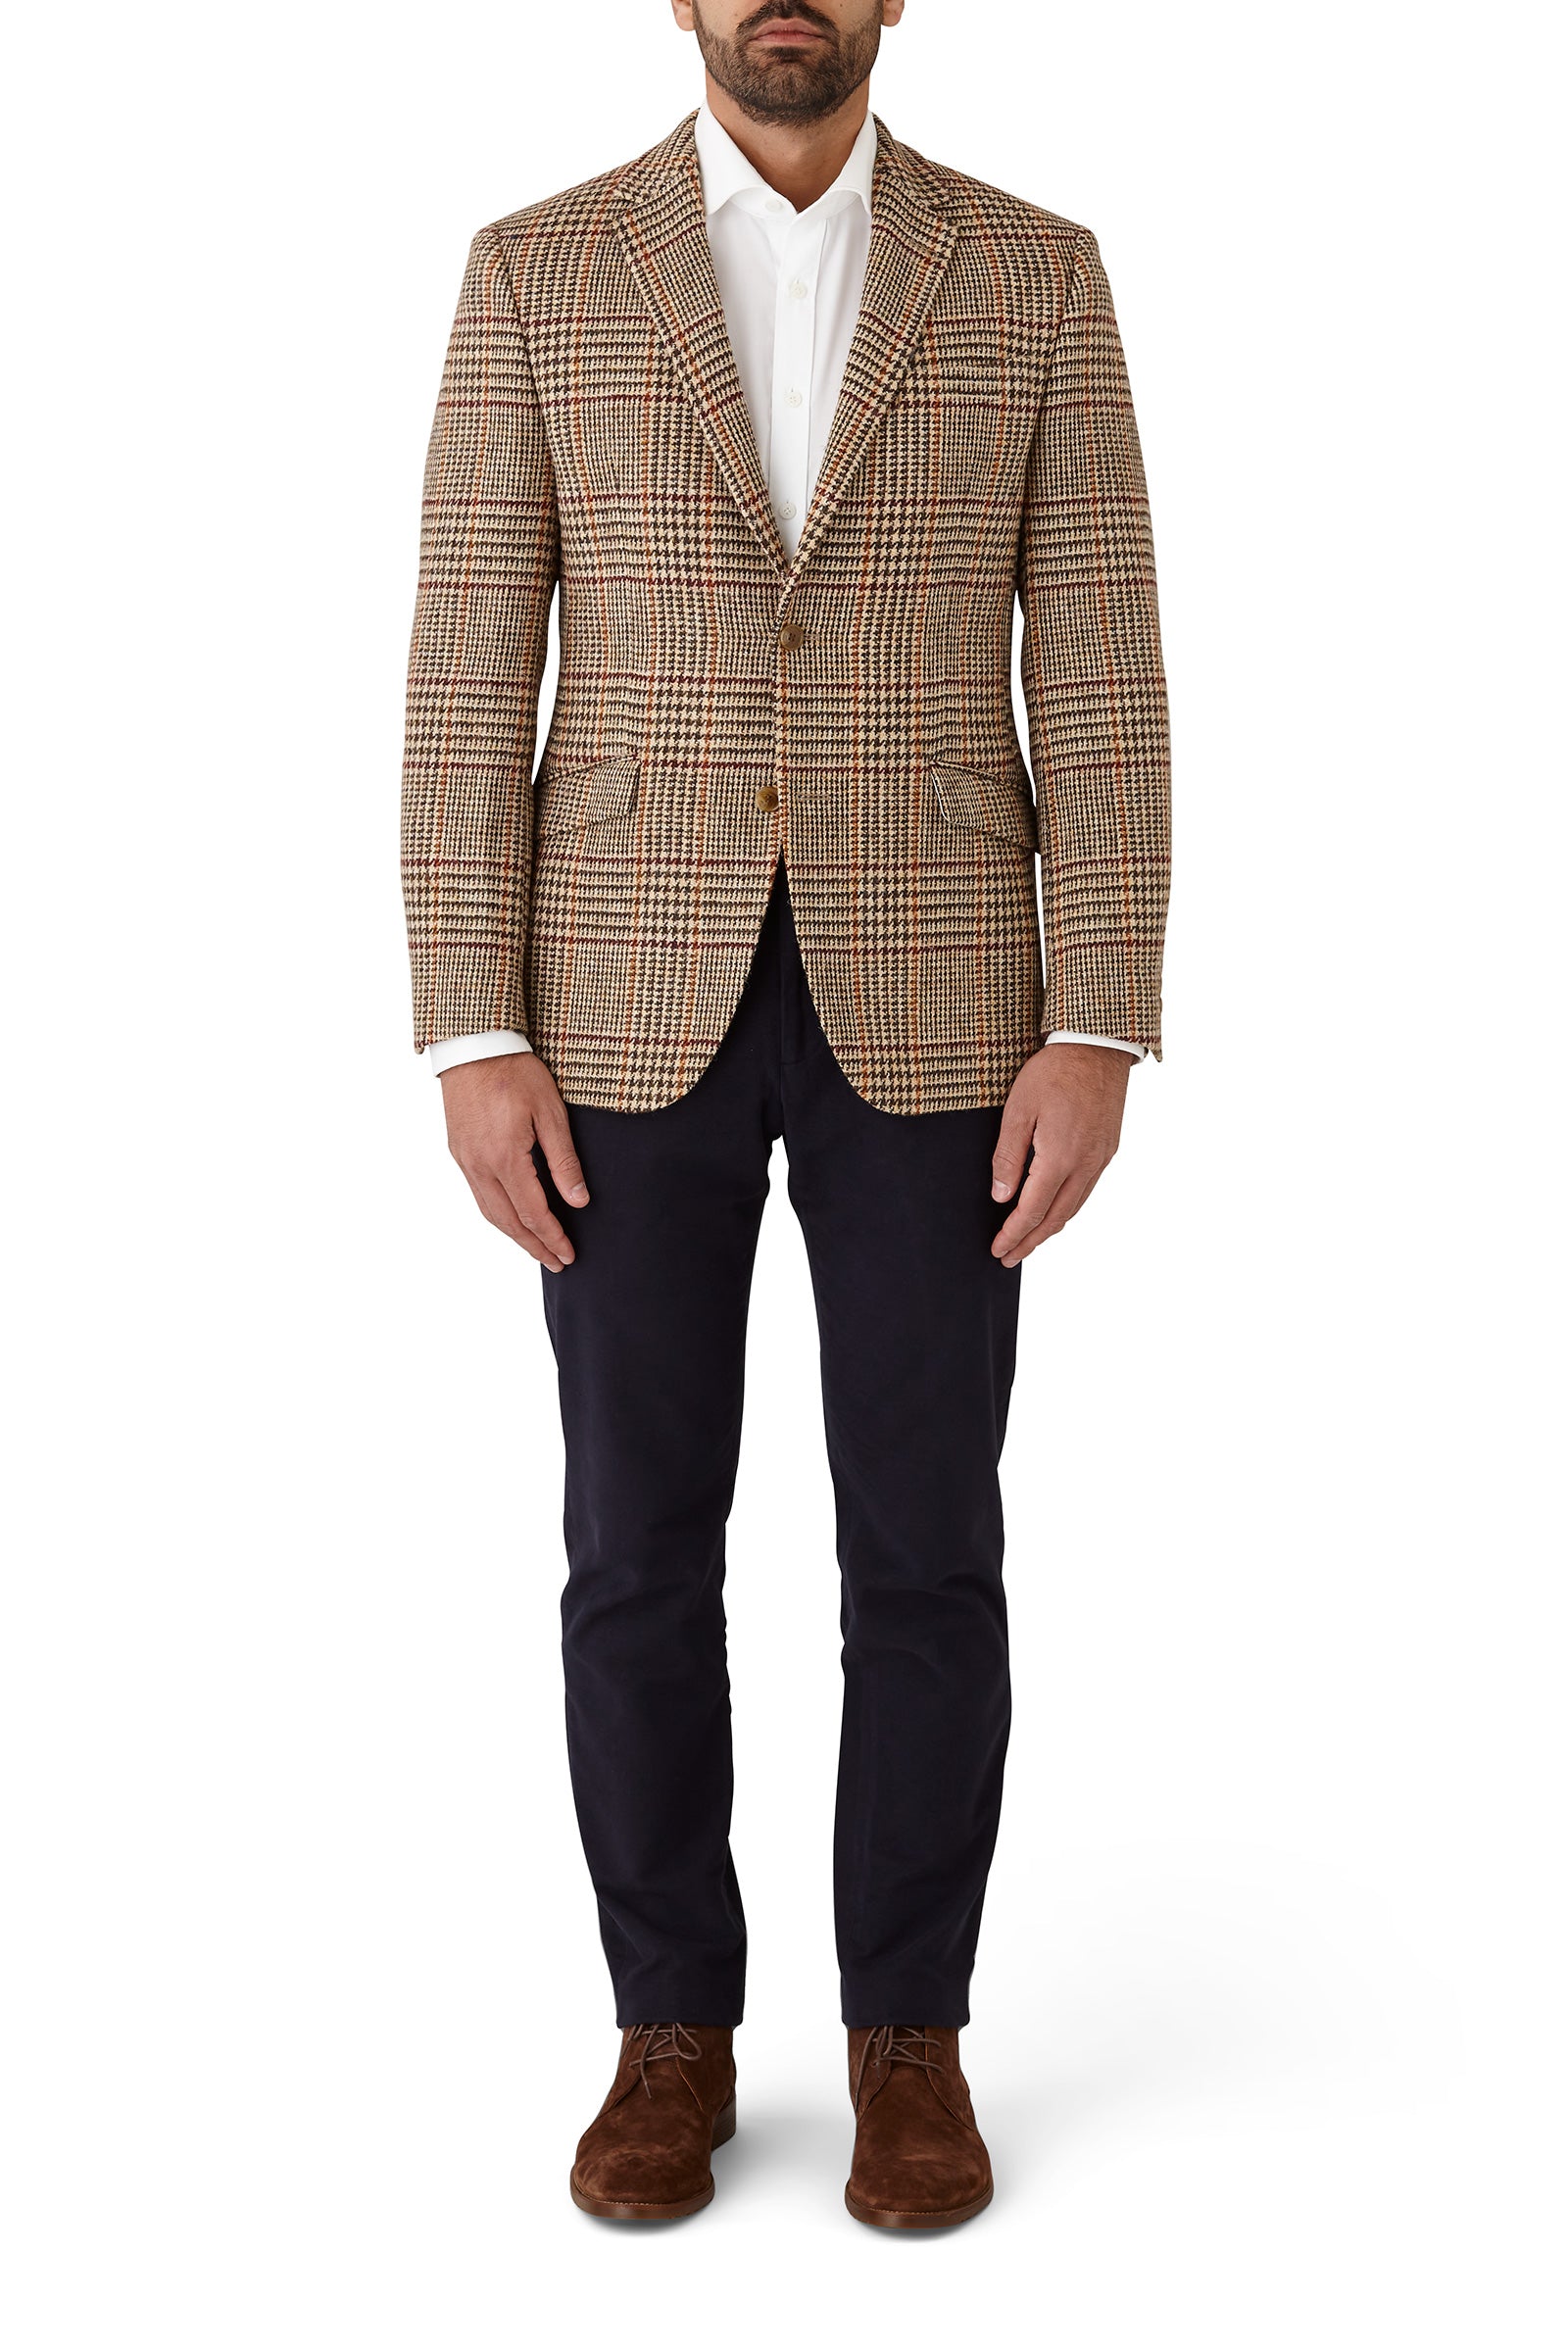 SALE Harris Tweed Jacket Gray Herringbone Scottish Large Sports Coat Blazer  Kupp - Etsy Israel